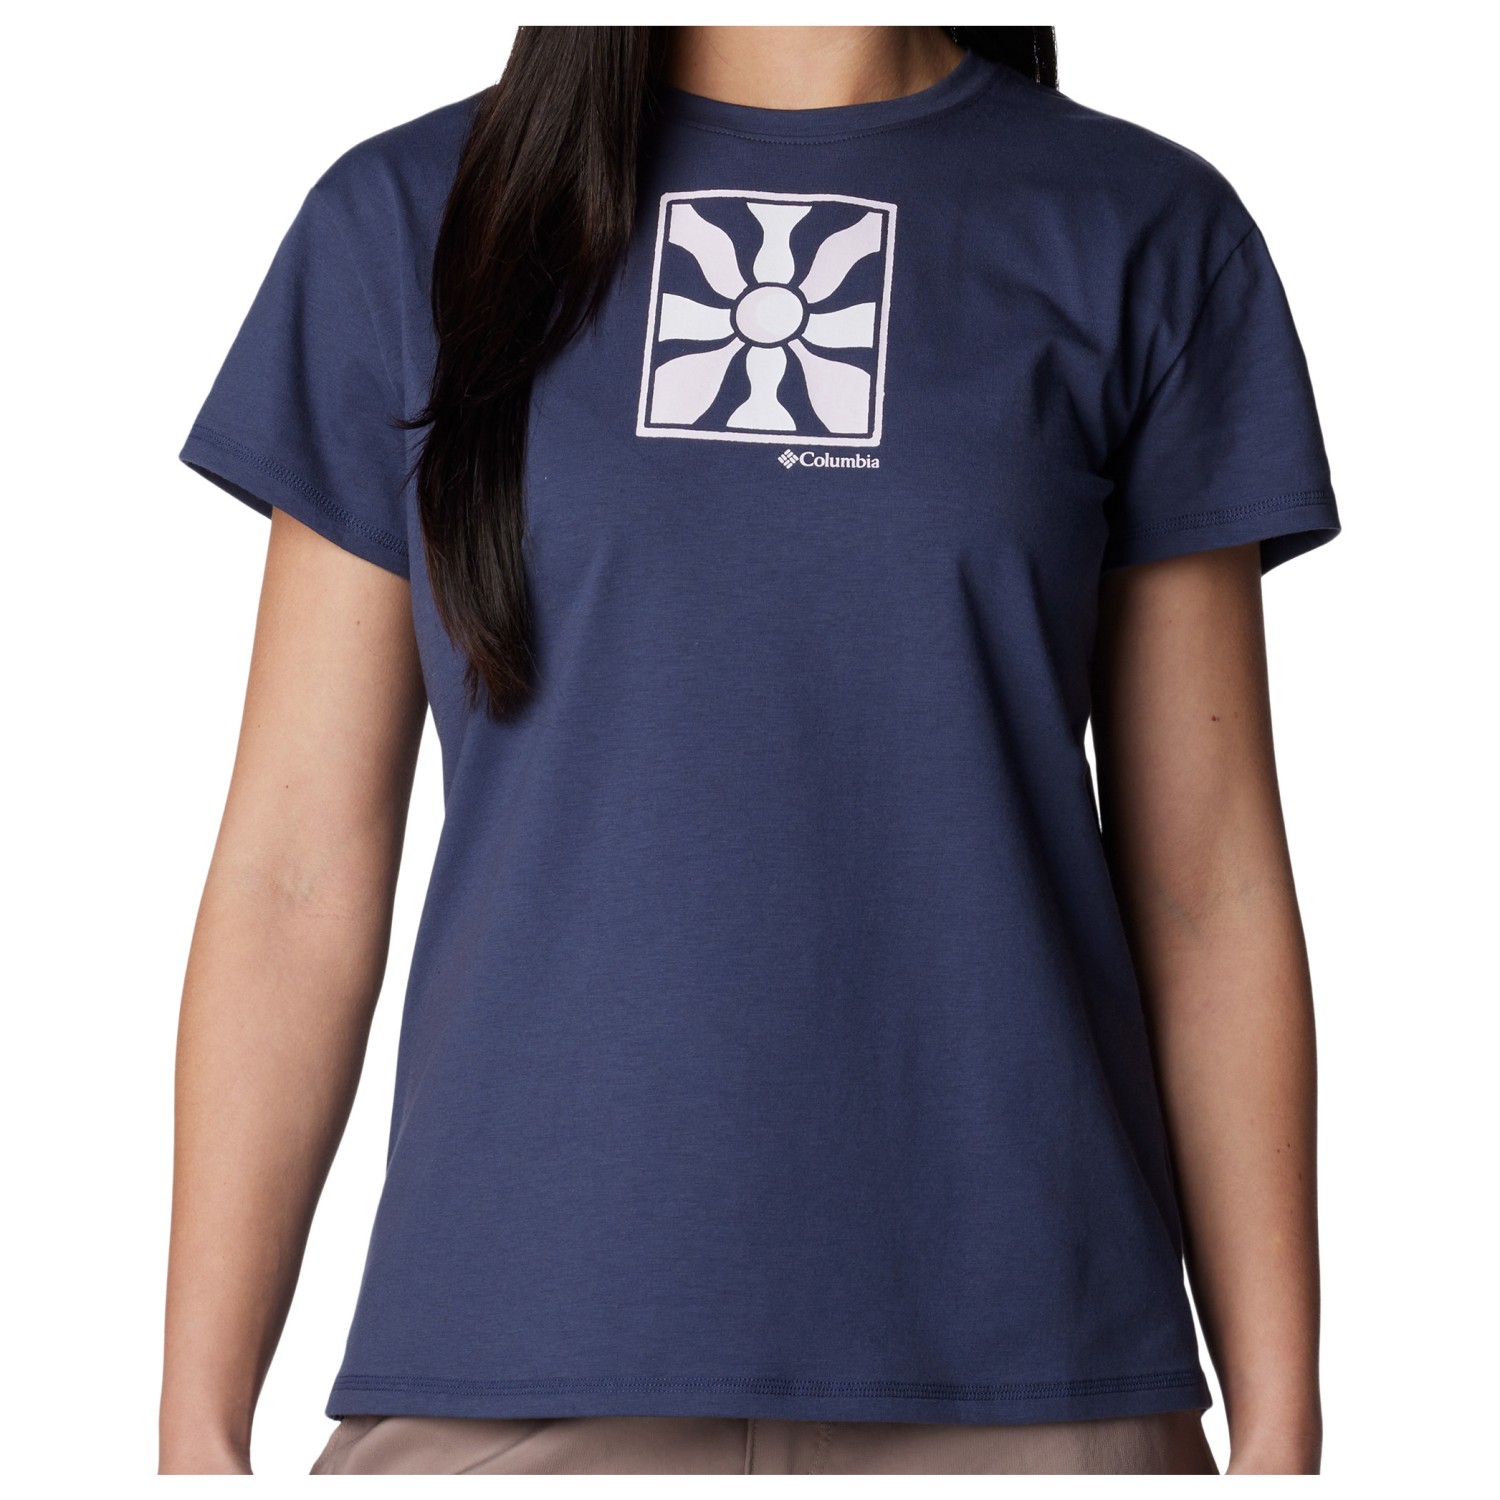 Функциональная рубашка Columbia Women's Sun Trek S/S Graphic Tee, цвет Nocturnal/Wavy Rays